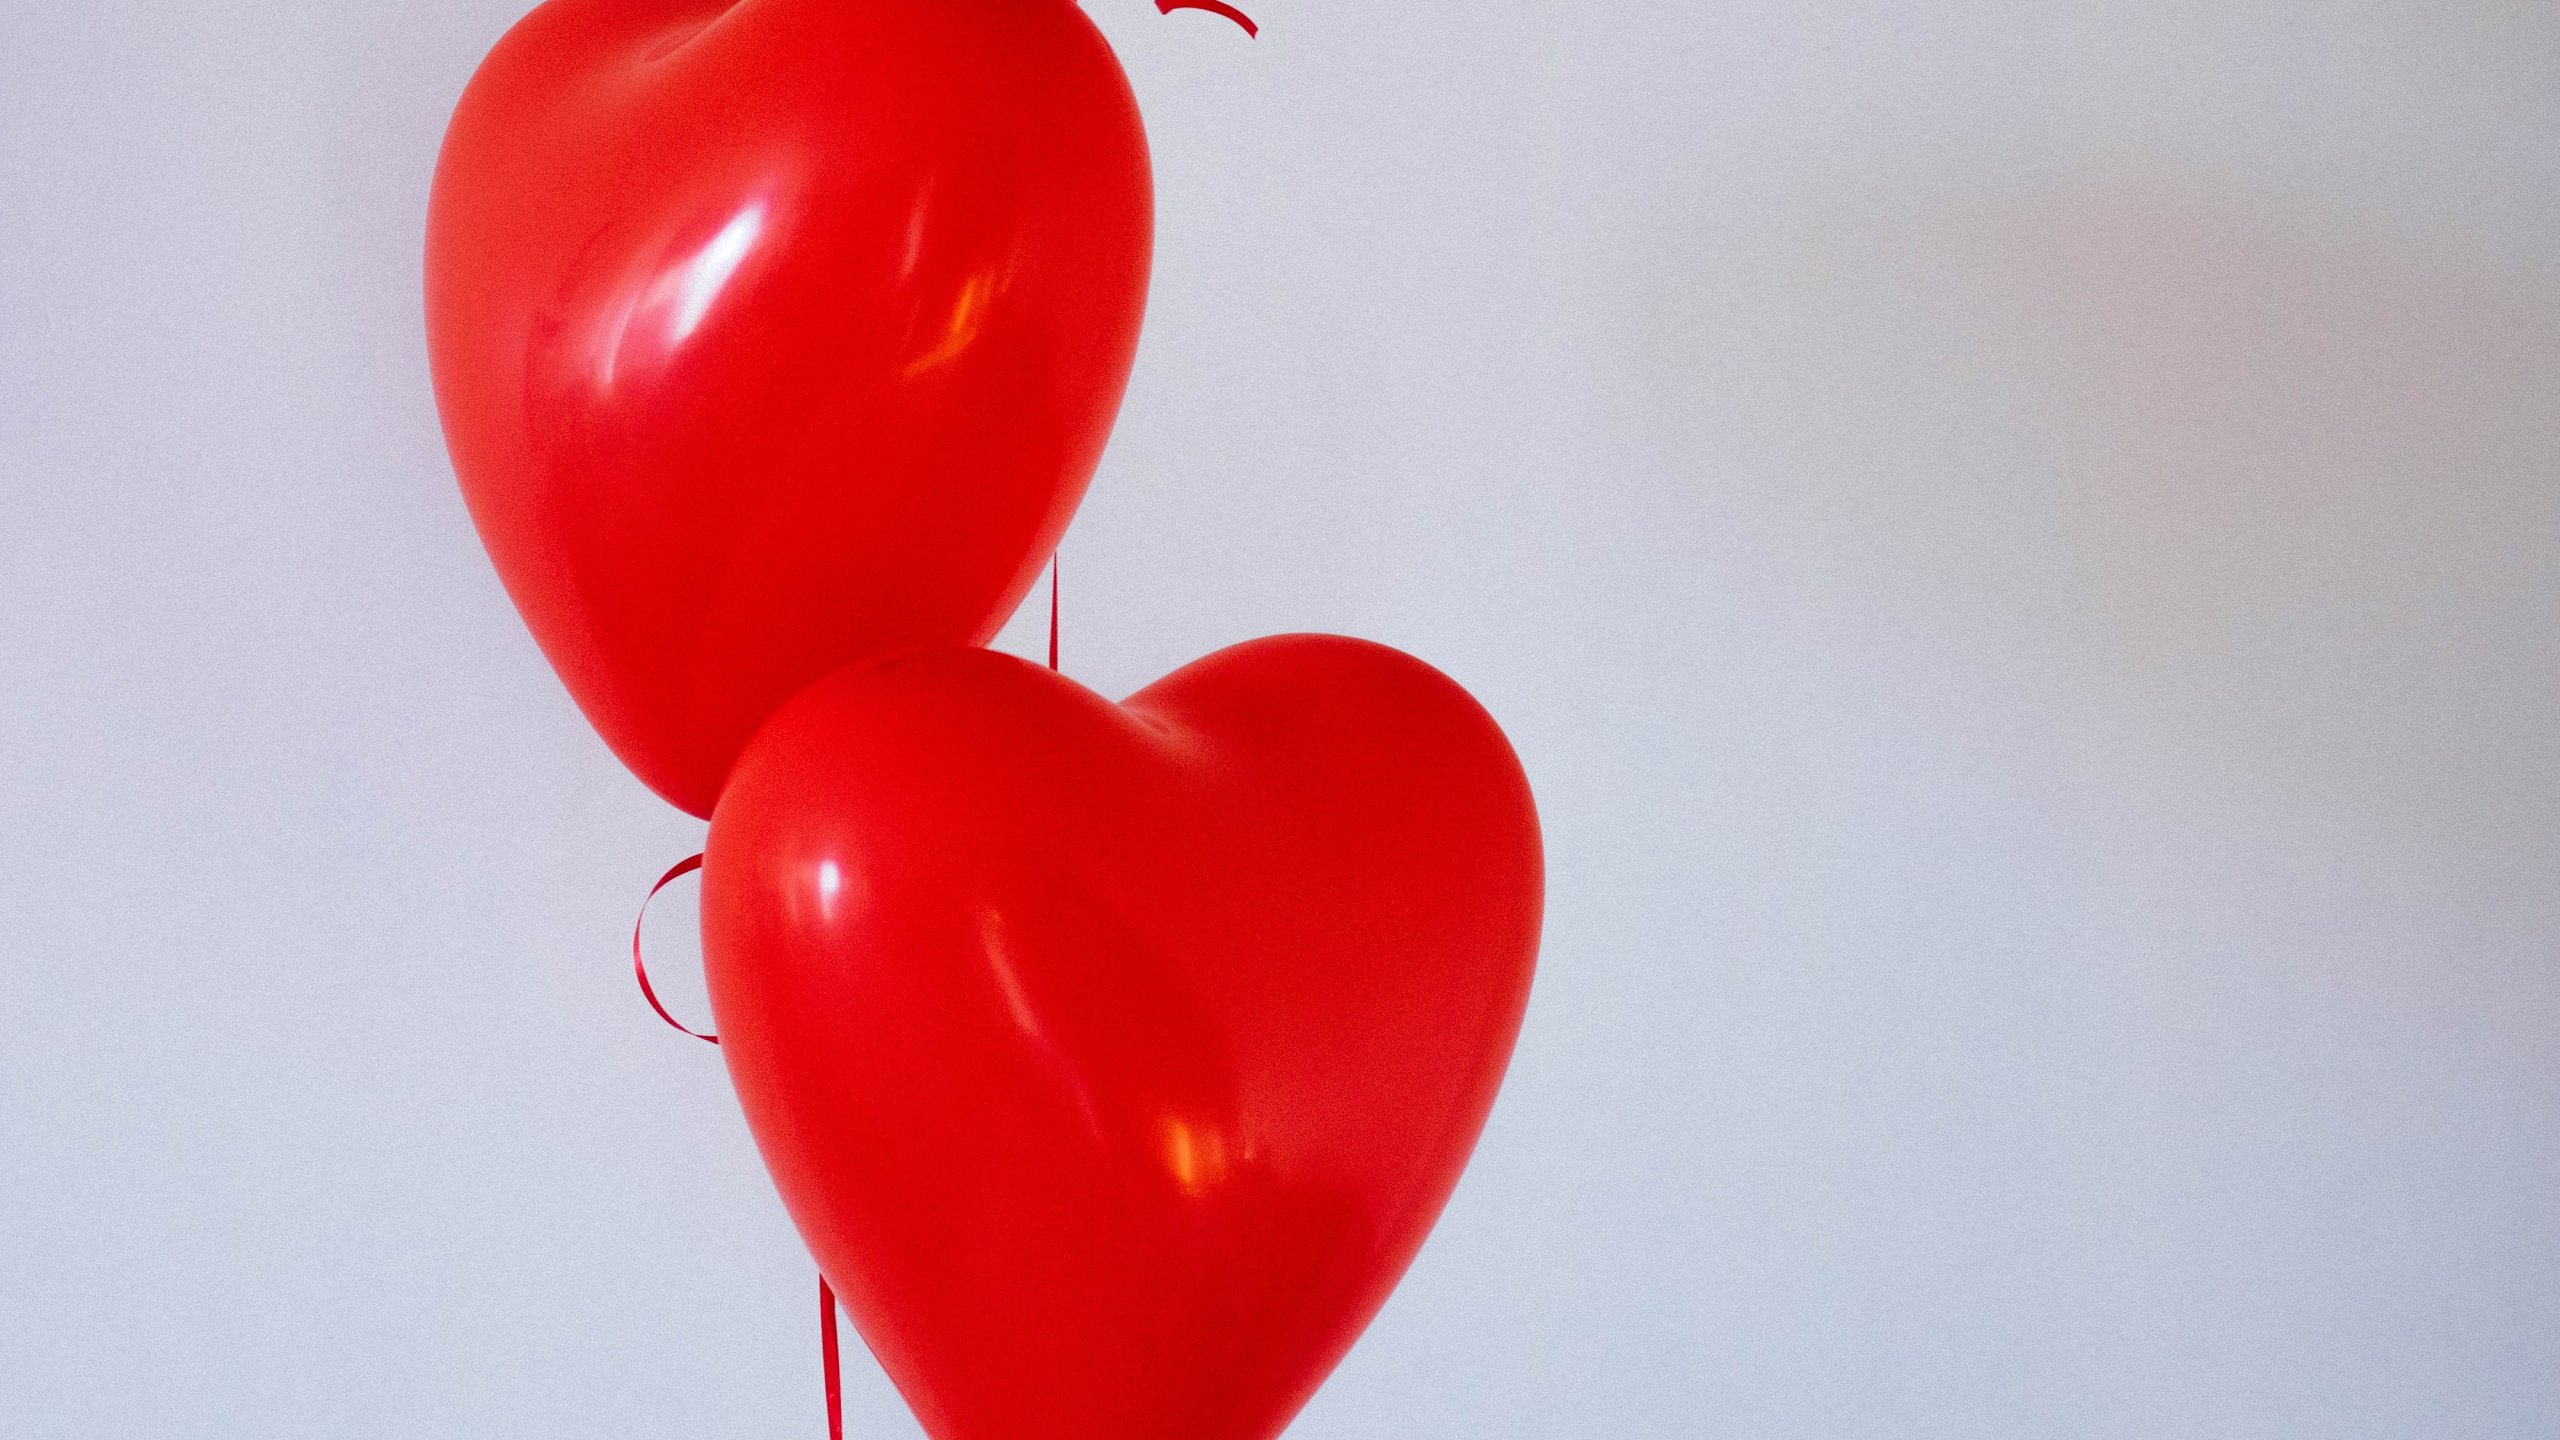 Ballon, Valentines Tag, Herzen, Organ, Liebe. Wallpaper in 2560x1440 Resolution